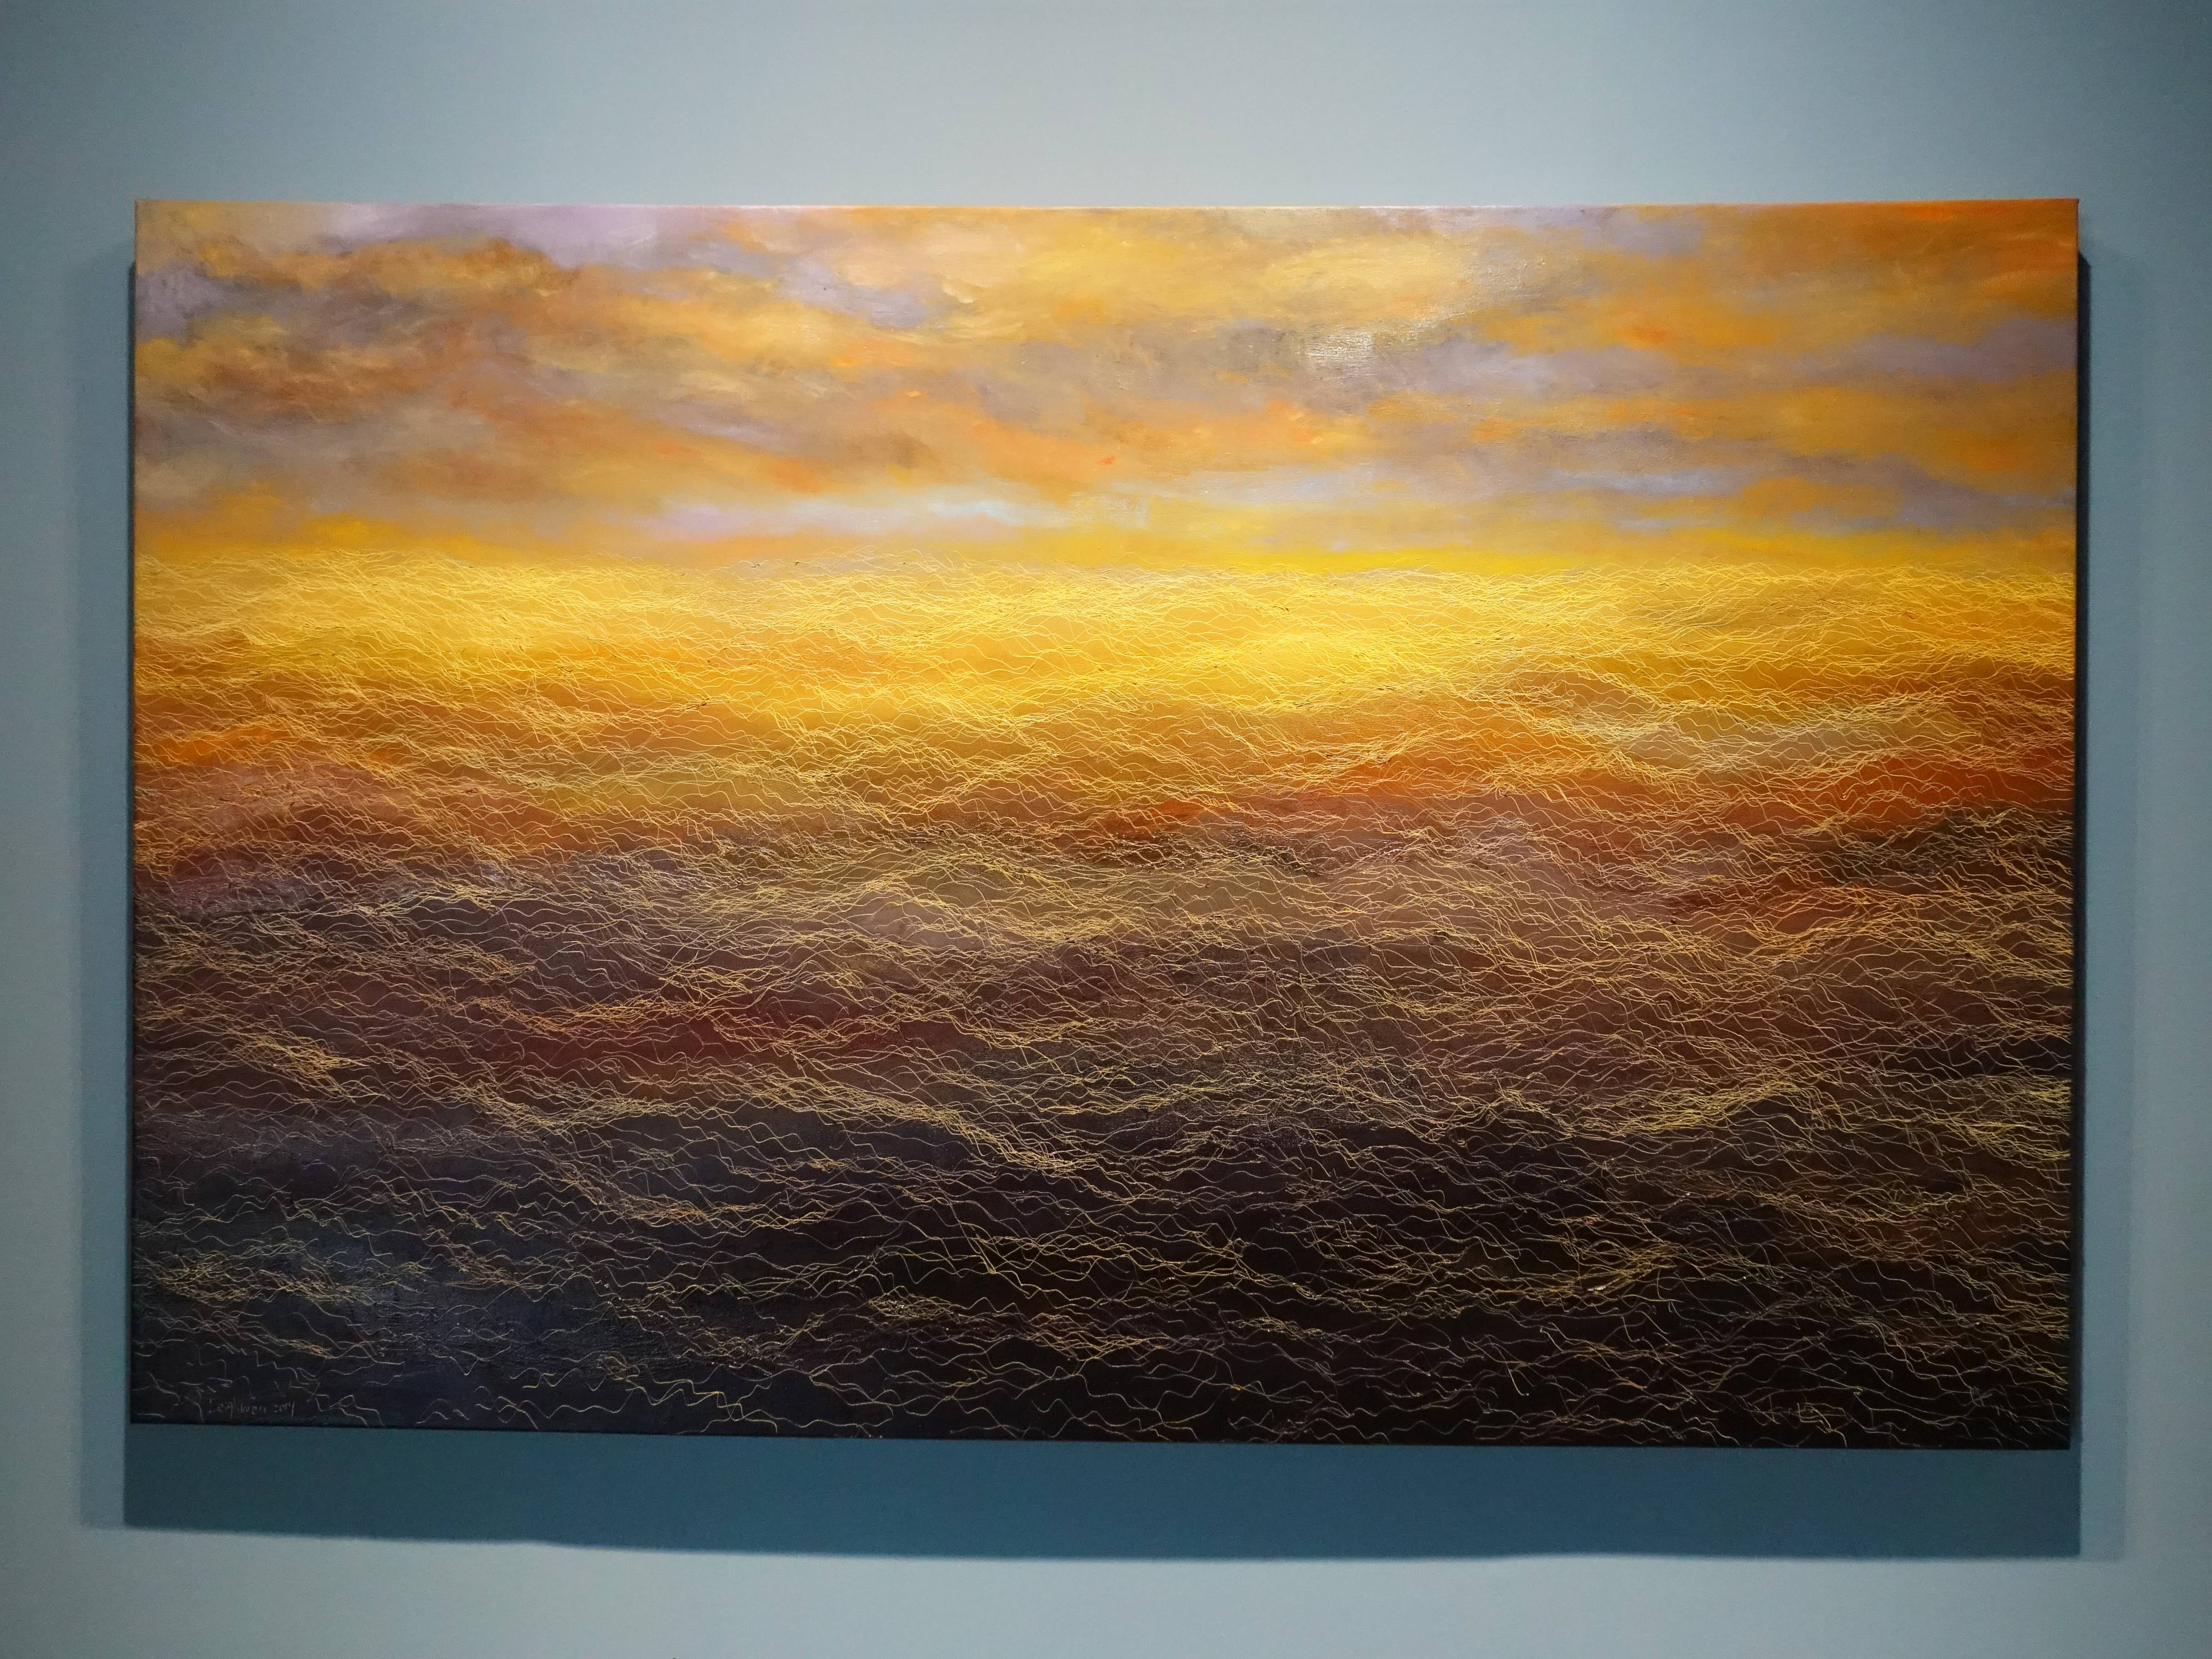 鄭麗雲，《曜》，145.5 x 227 cm，油彩、蔴布，2014。